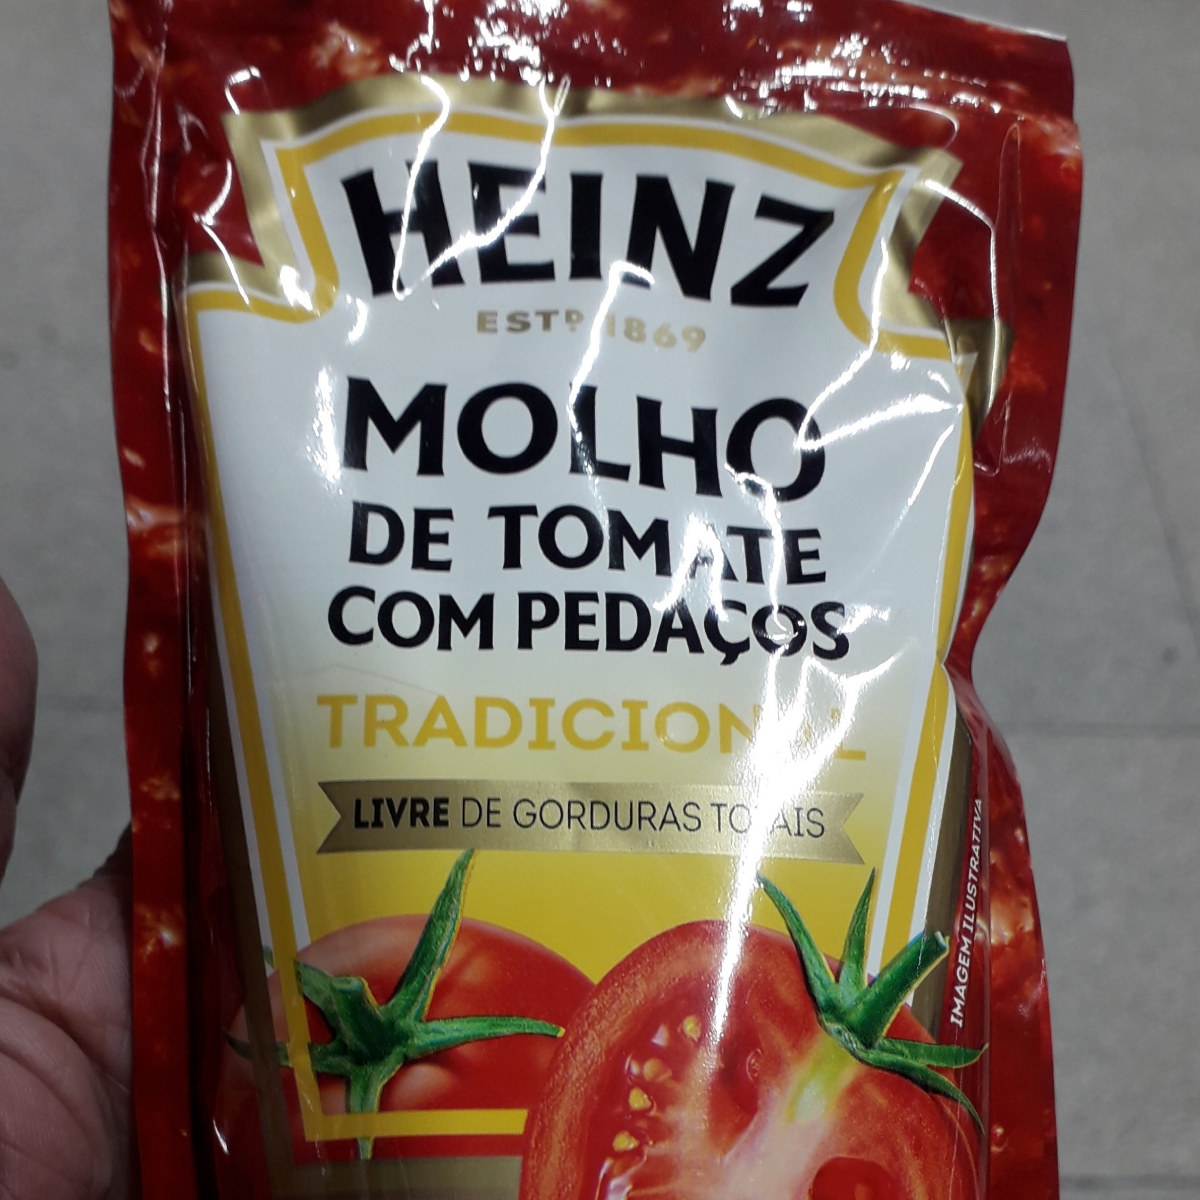 Heinz Molho de tomate com pedaços Reviews | abillion